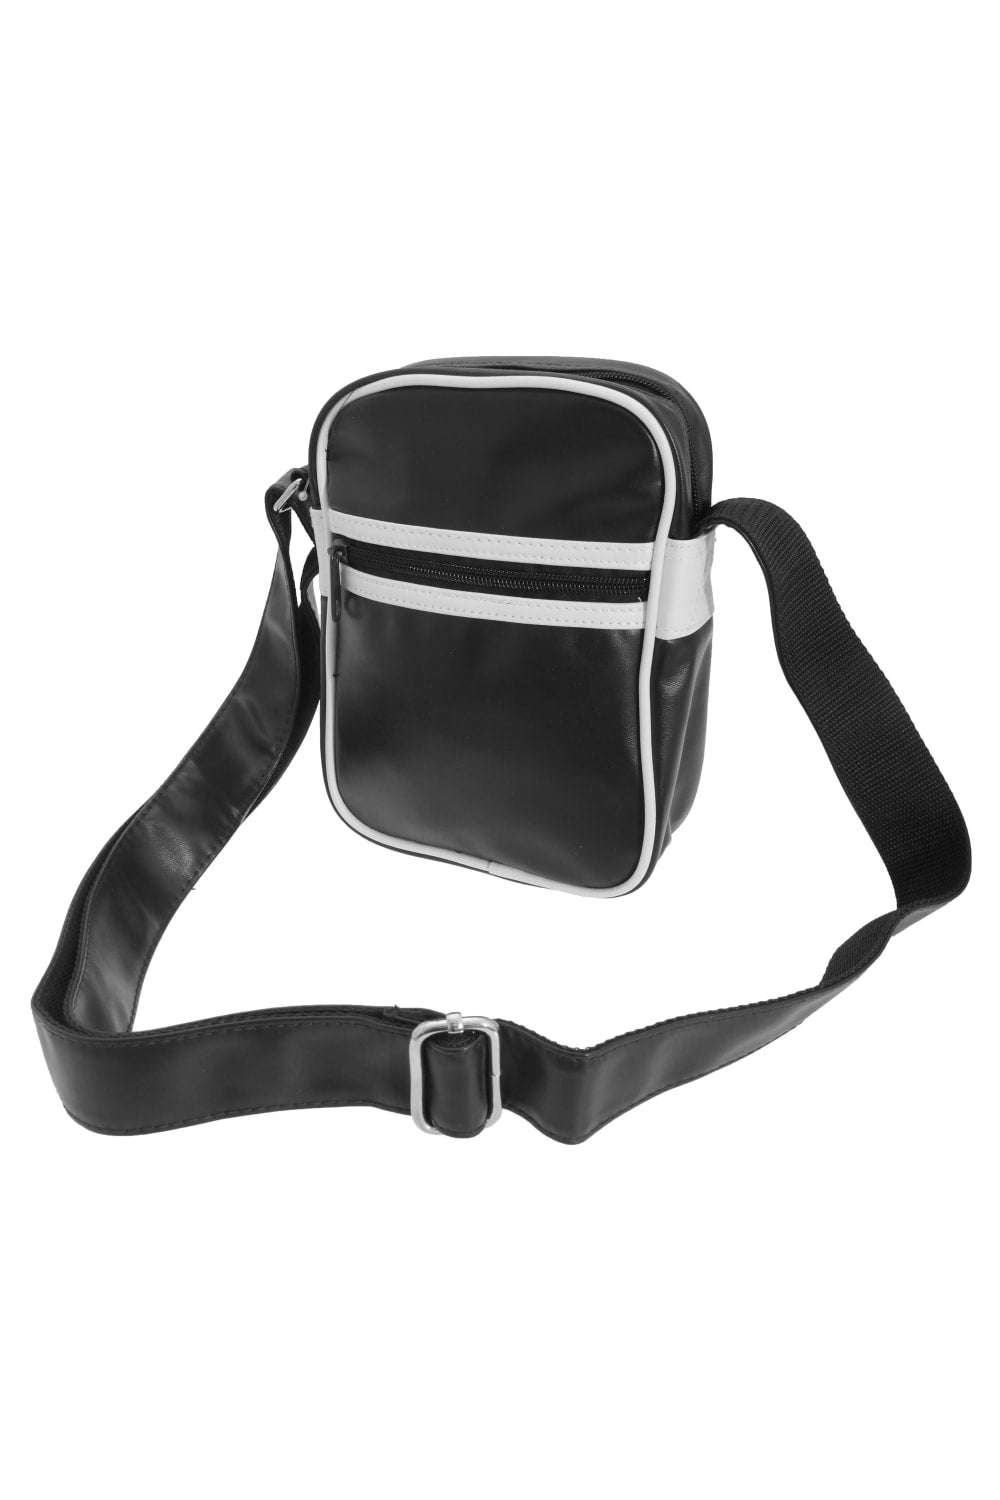 Original Retro Shoulder Strap Cross Body Bag - Black/White